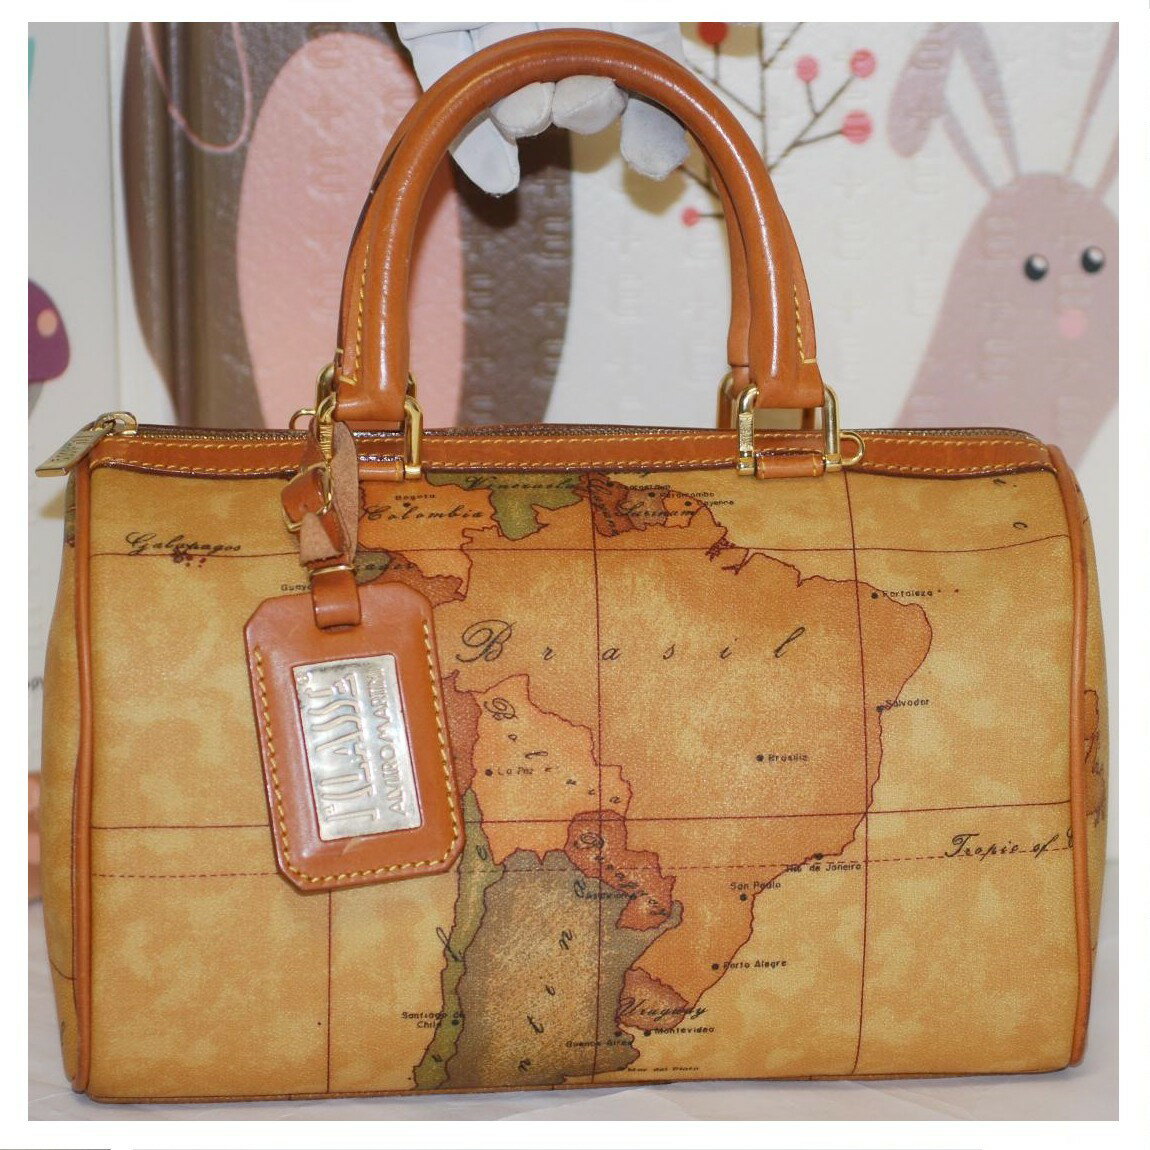 【中古】本物抜群に綺麗プリマクラッセの世界地図柄茶色革素材29cmのボストンバッグ サイズW29H17D14cm 〇C18-19